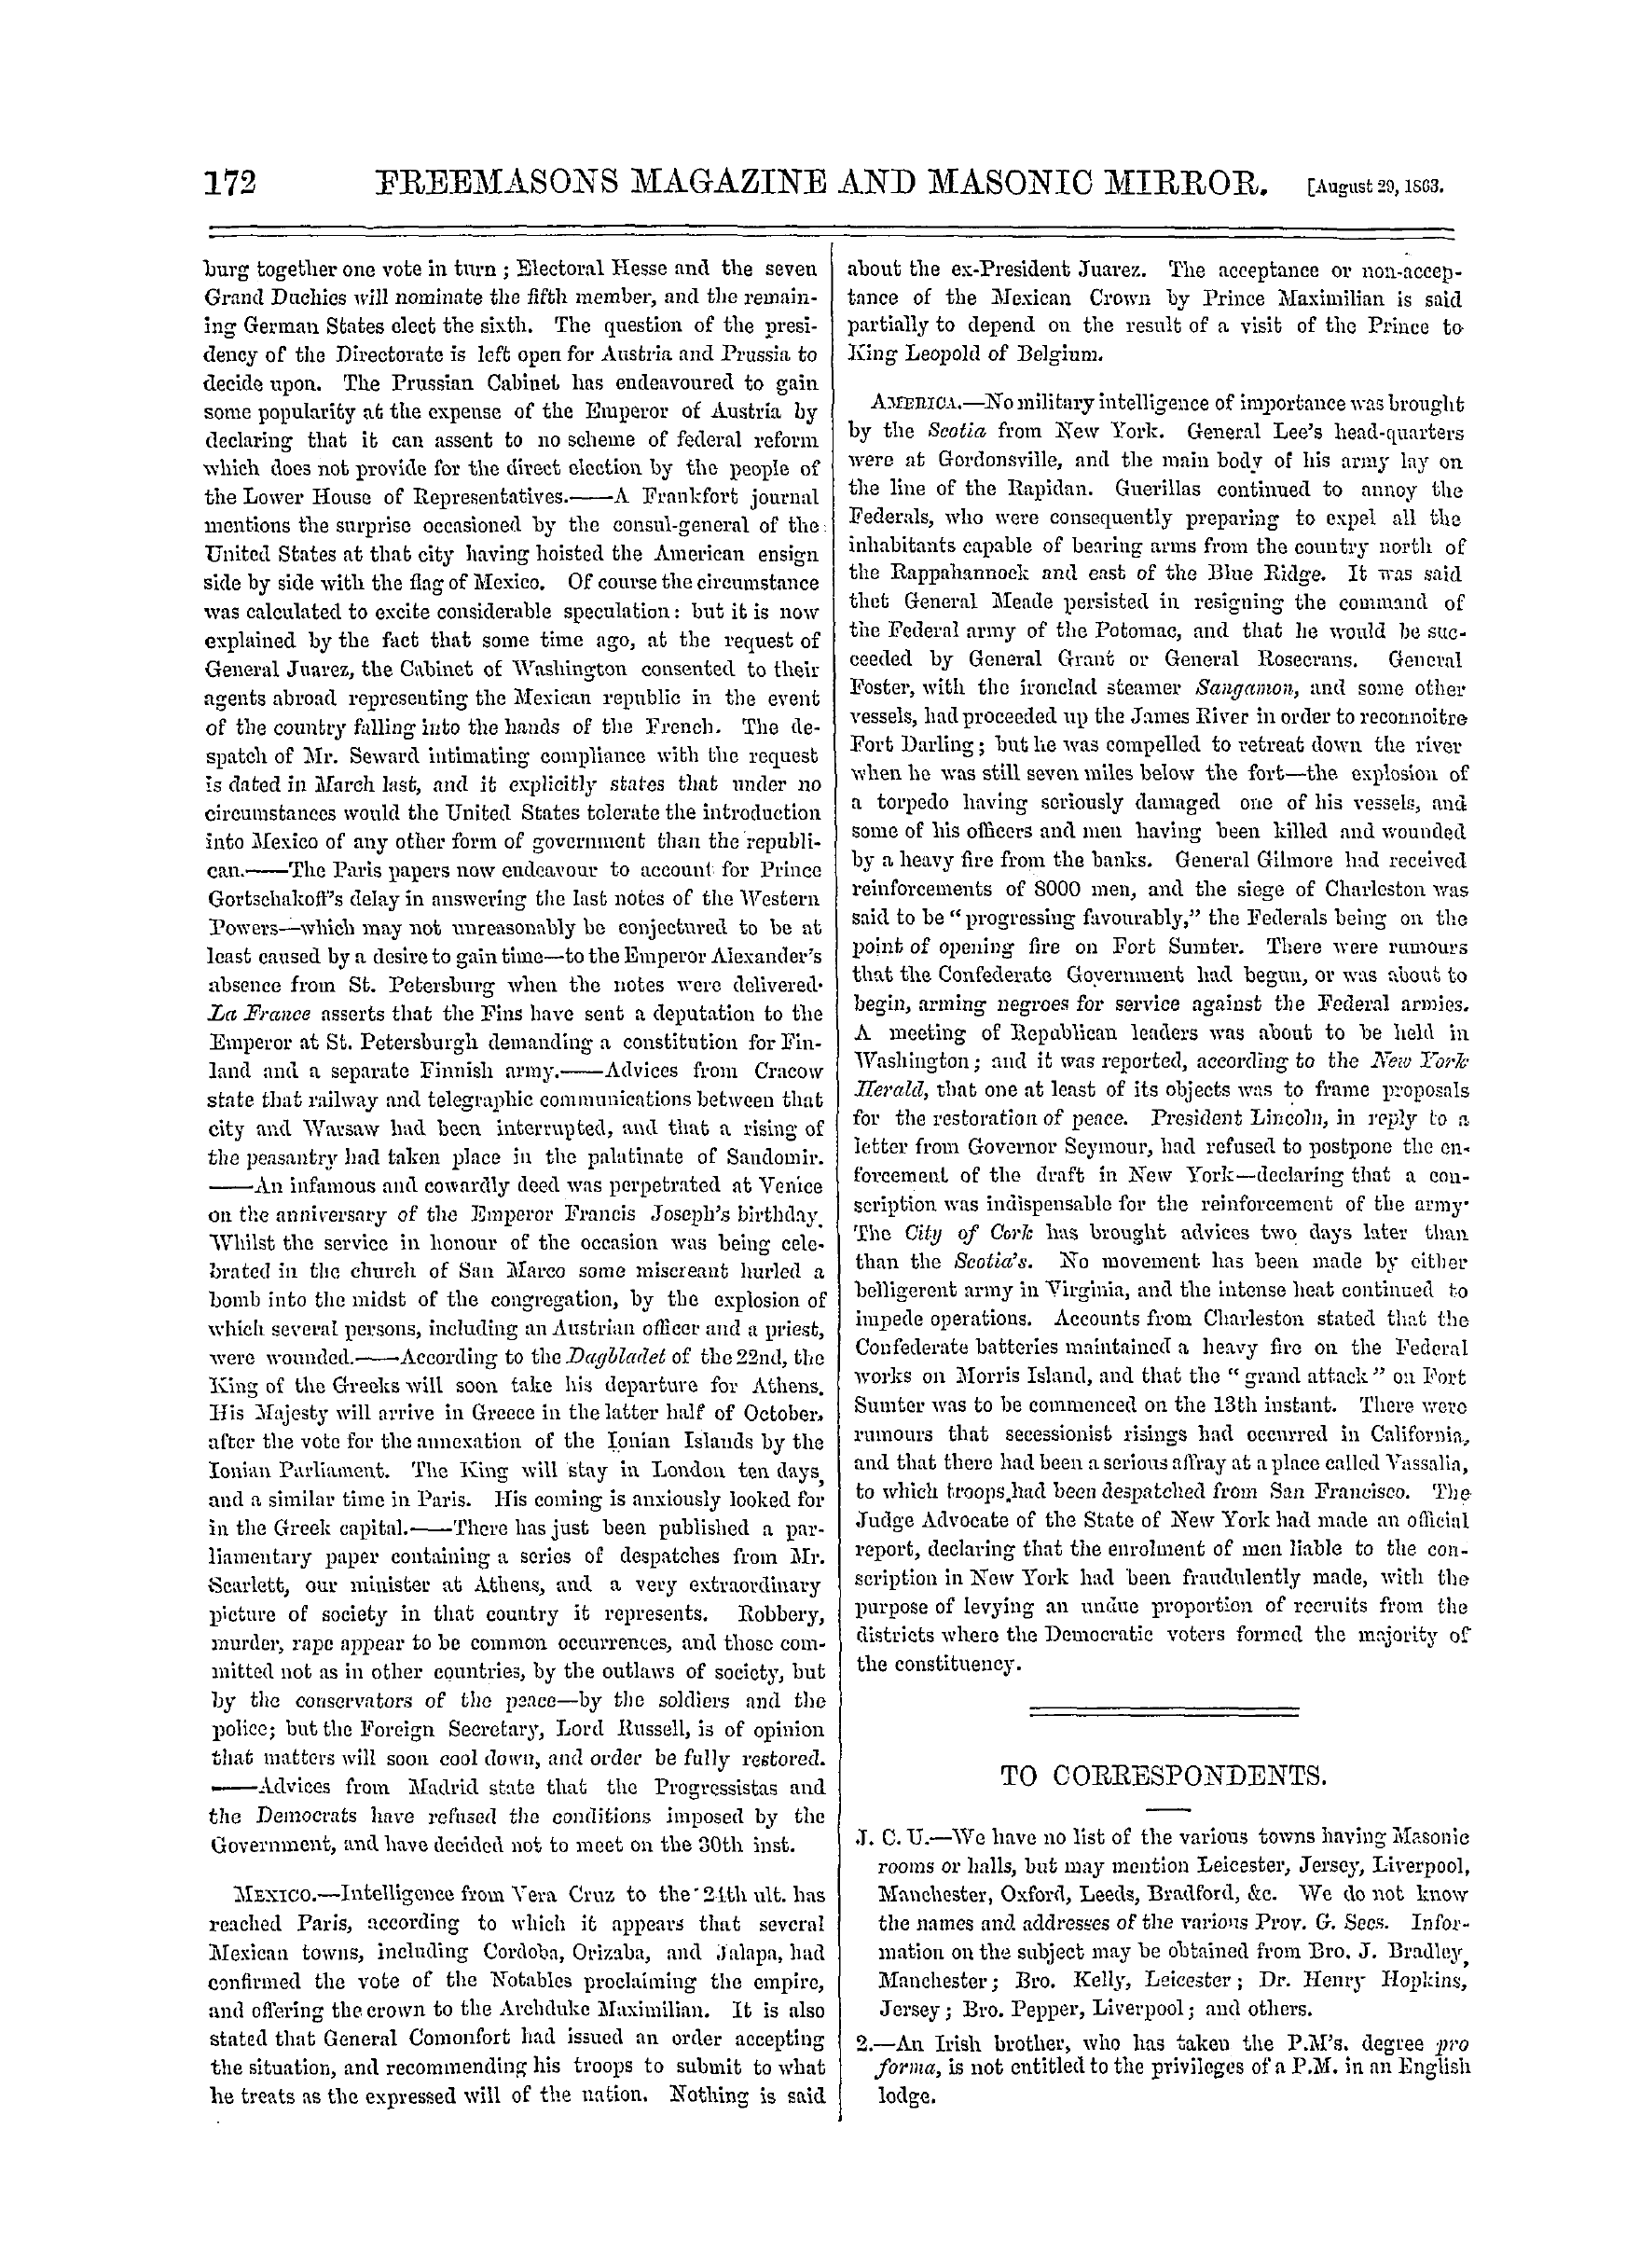 The Freemasons' Monthly Magazine: 1863-08-29: 20